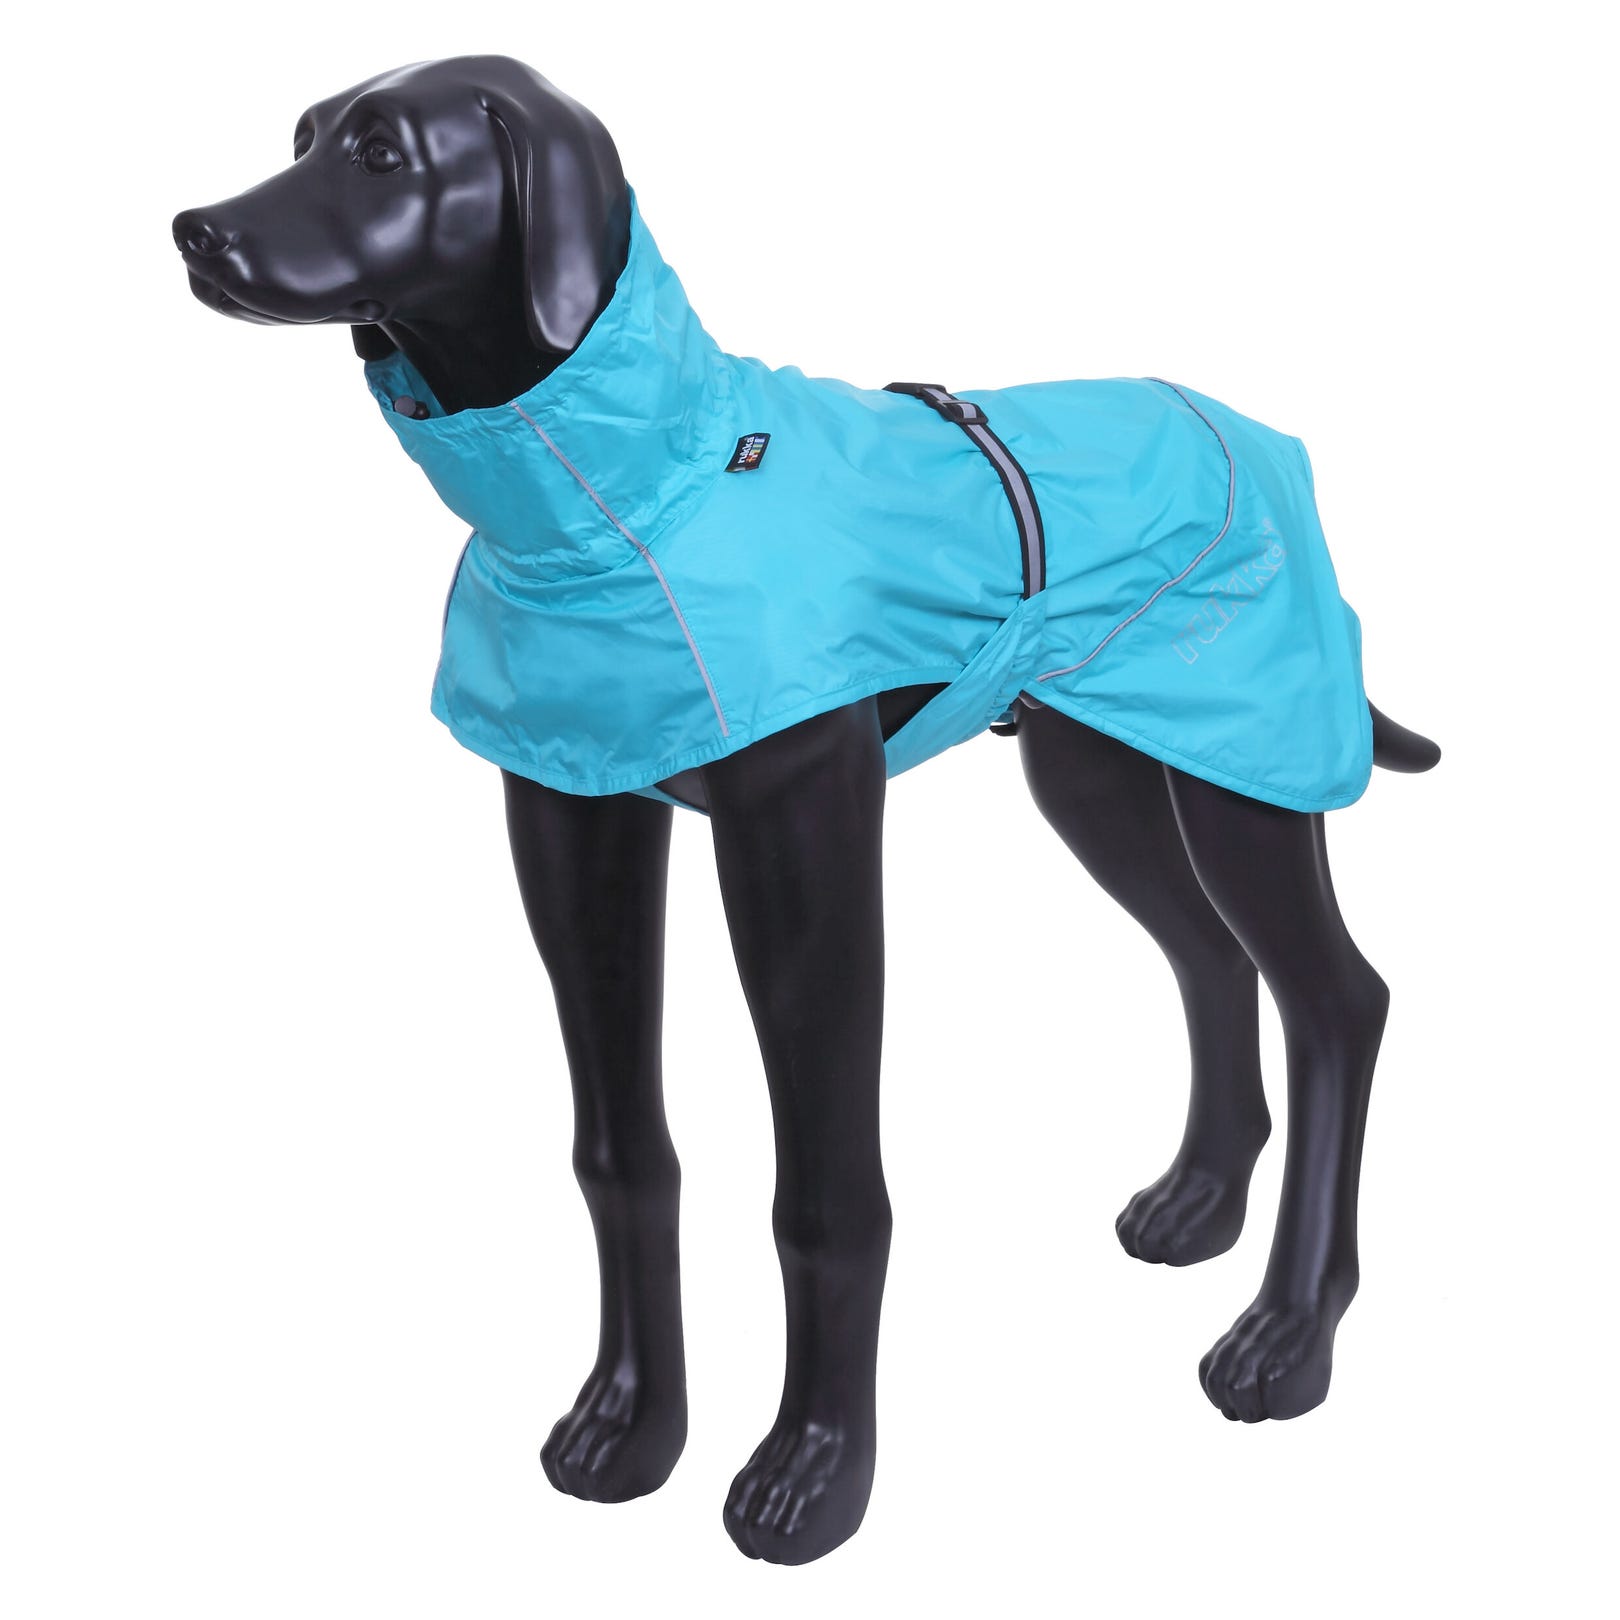 Rukka pets Hase raincoat